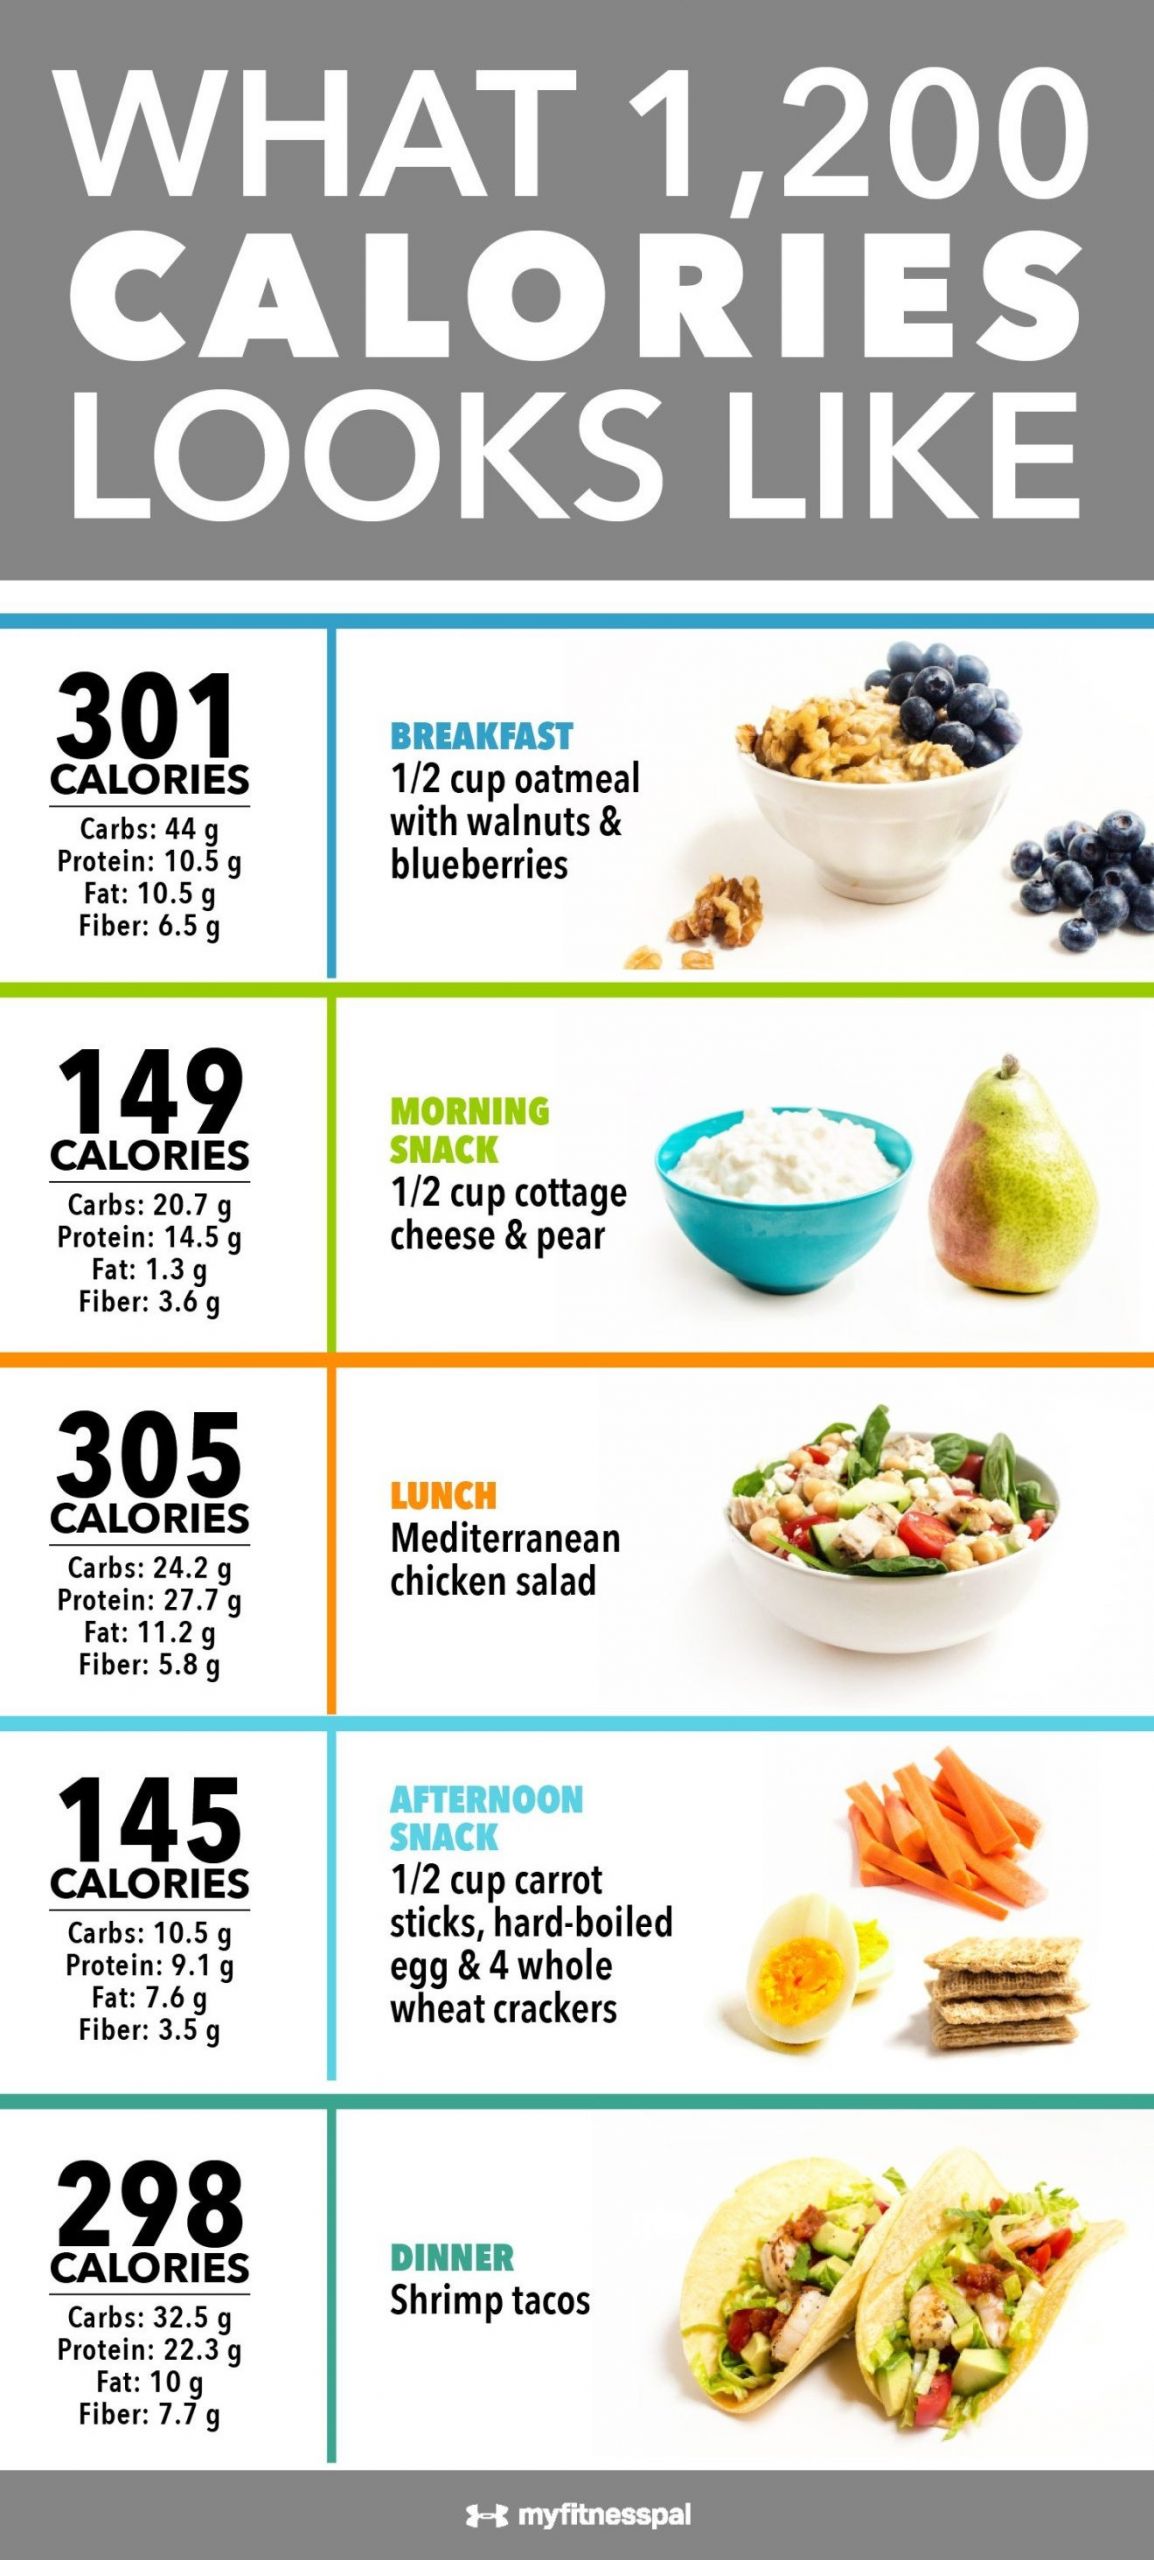 Low Calorie Diet Meal Plan
 Dr Nowzaradan Diet Plan 1200 Calories